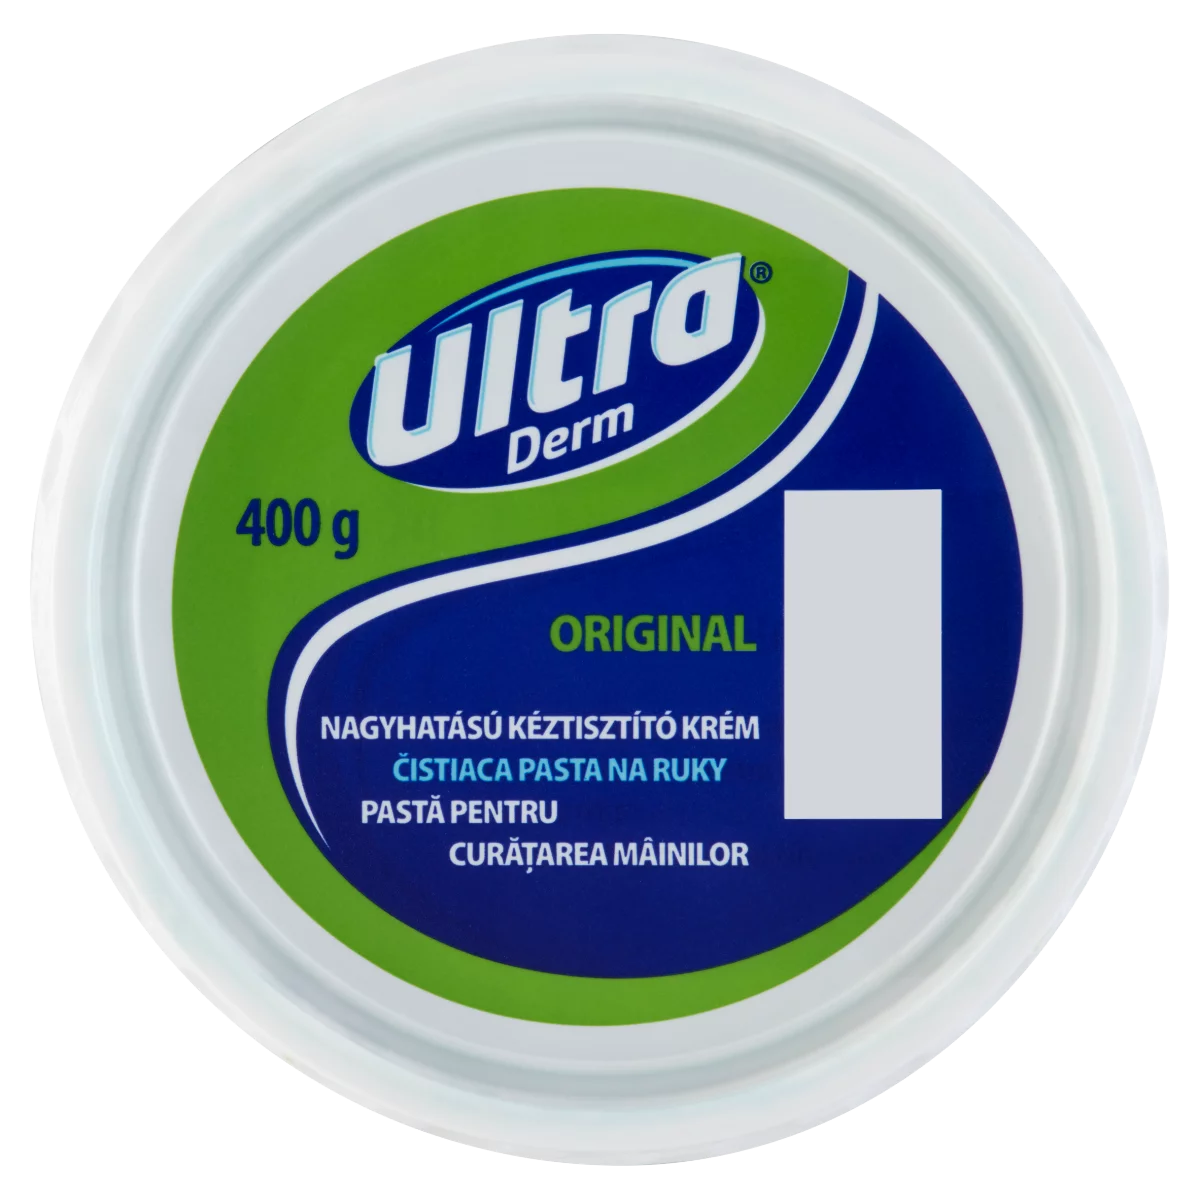 Ultra Derm Original nagyhatású kéztisztító krém 400 g